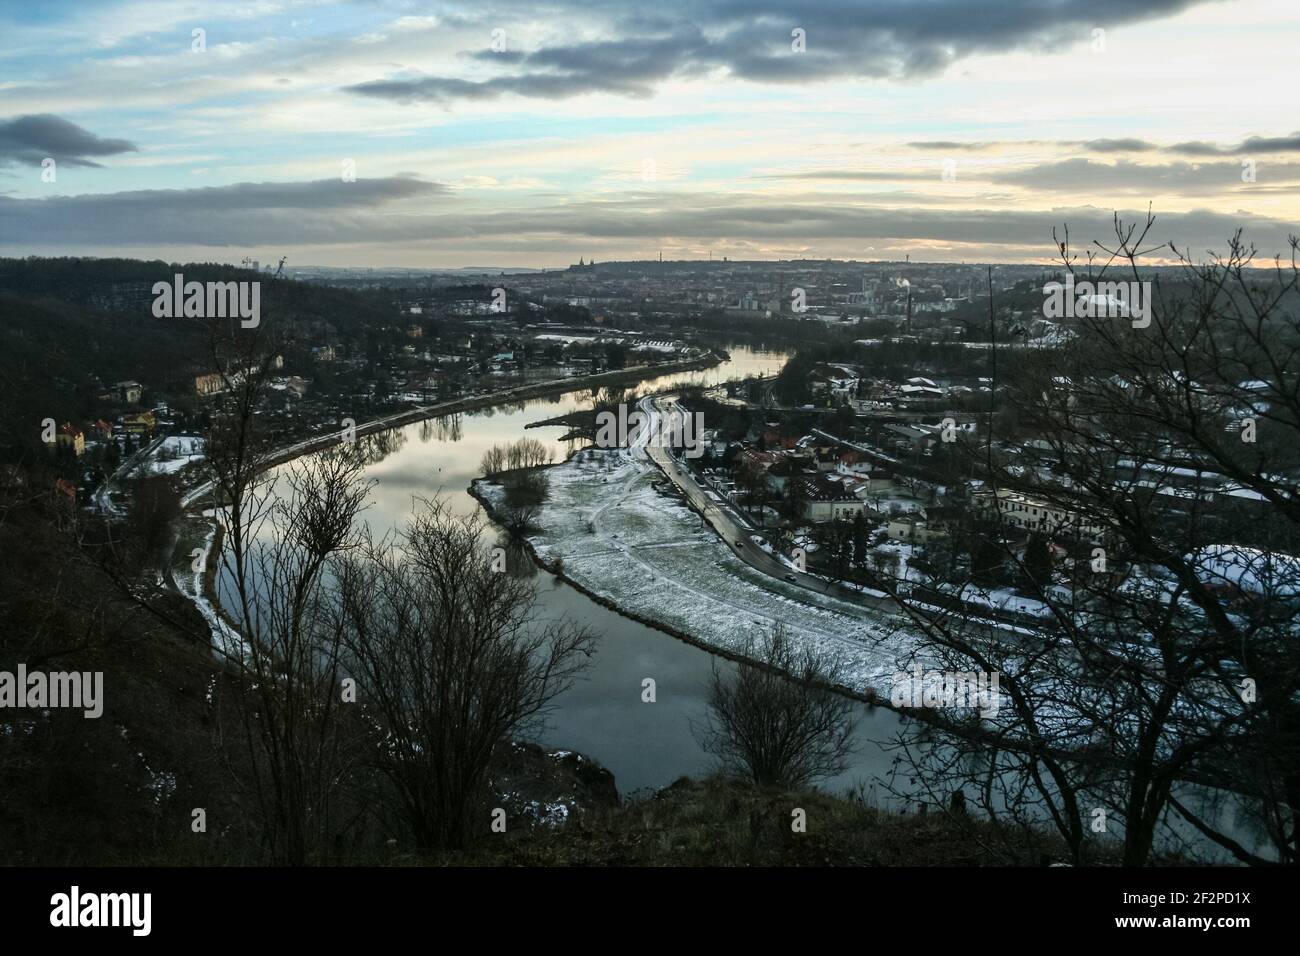 Panorama de praga visto desde arriba desde la colina Zamky, con un enfoque en el río Moldau Vltava y el asentamiento de Sedlec en invierno, al atardecer, en CZ Foto de stock